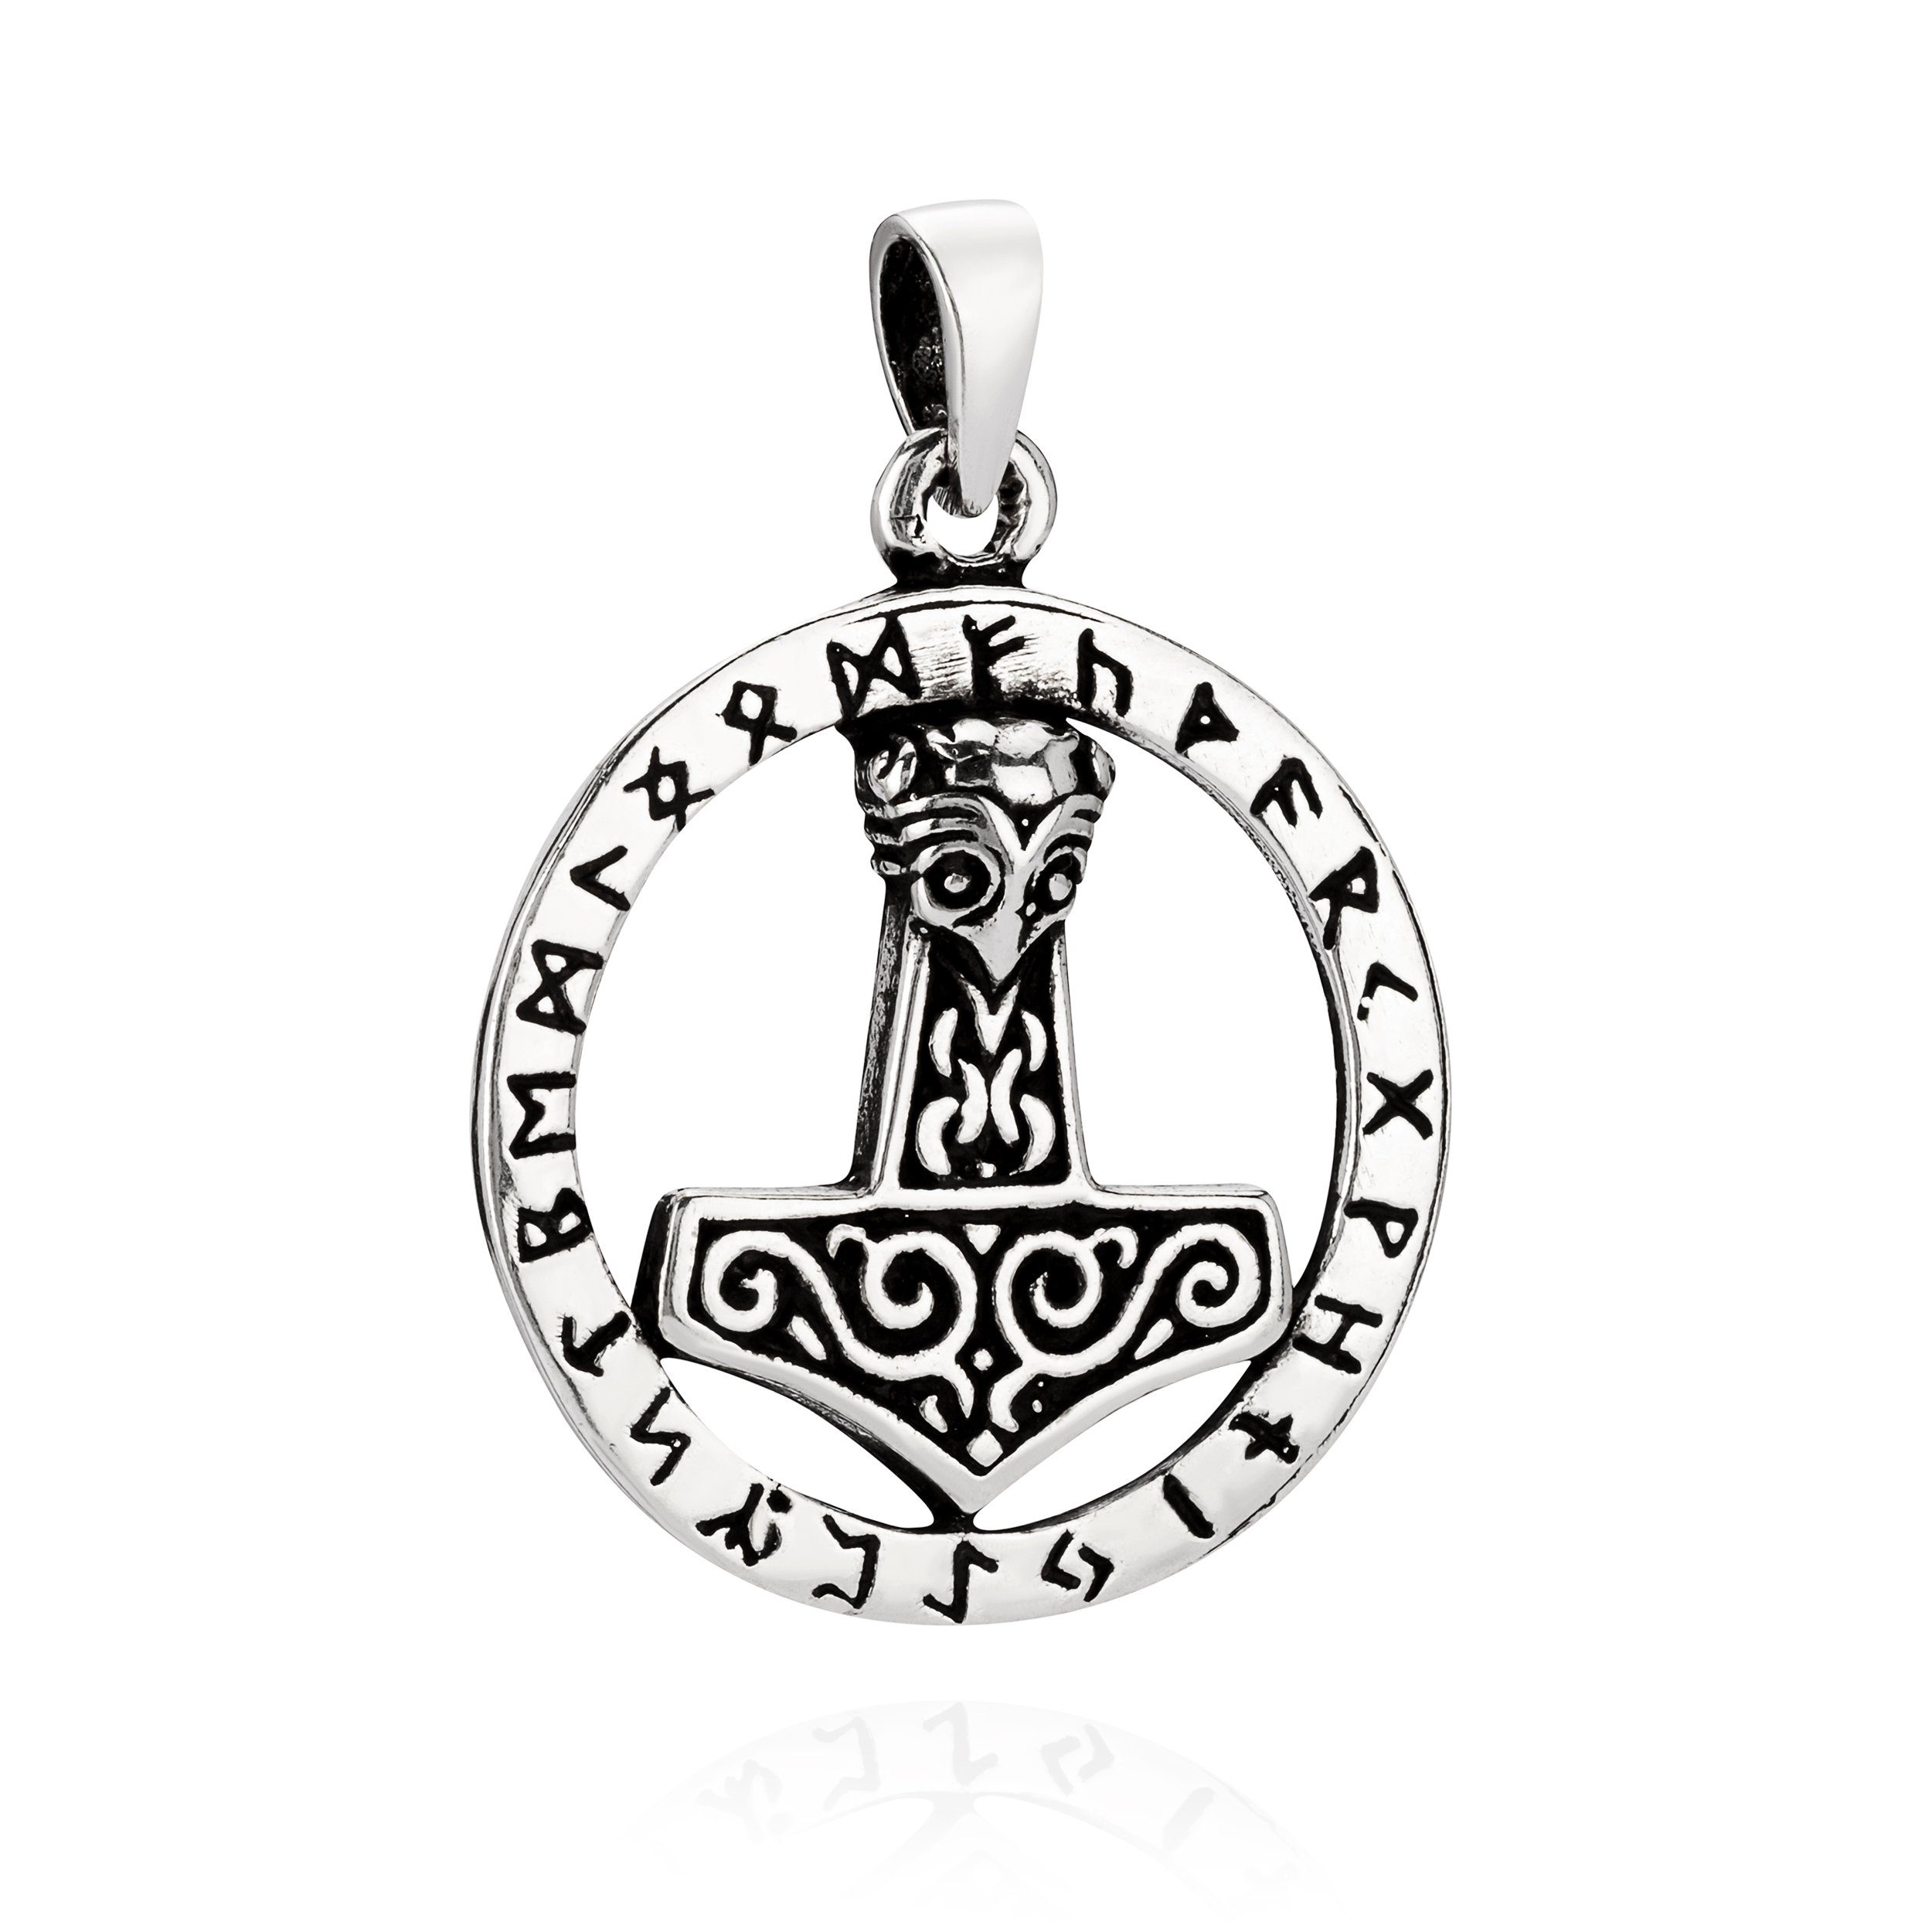 NKlaus Kettenanhänger Kettenanhänger Thors Hammer Runen rund 925 Silber, 925 Sterling Silber Silberschmuck für Damen